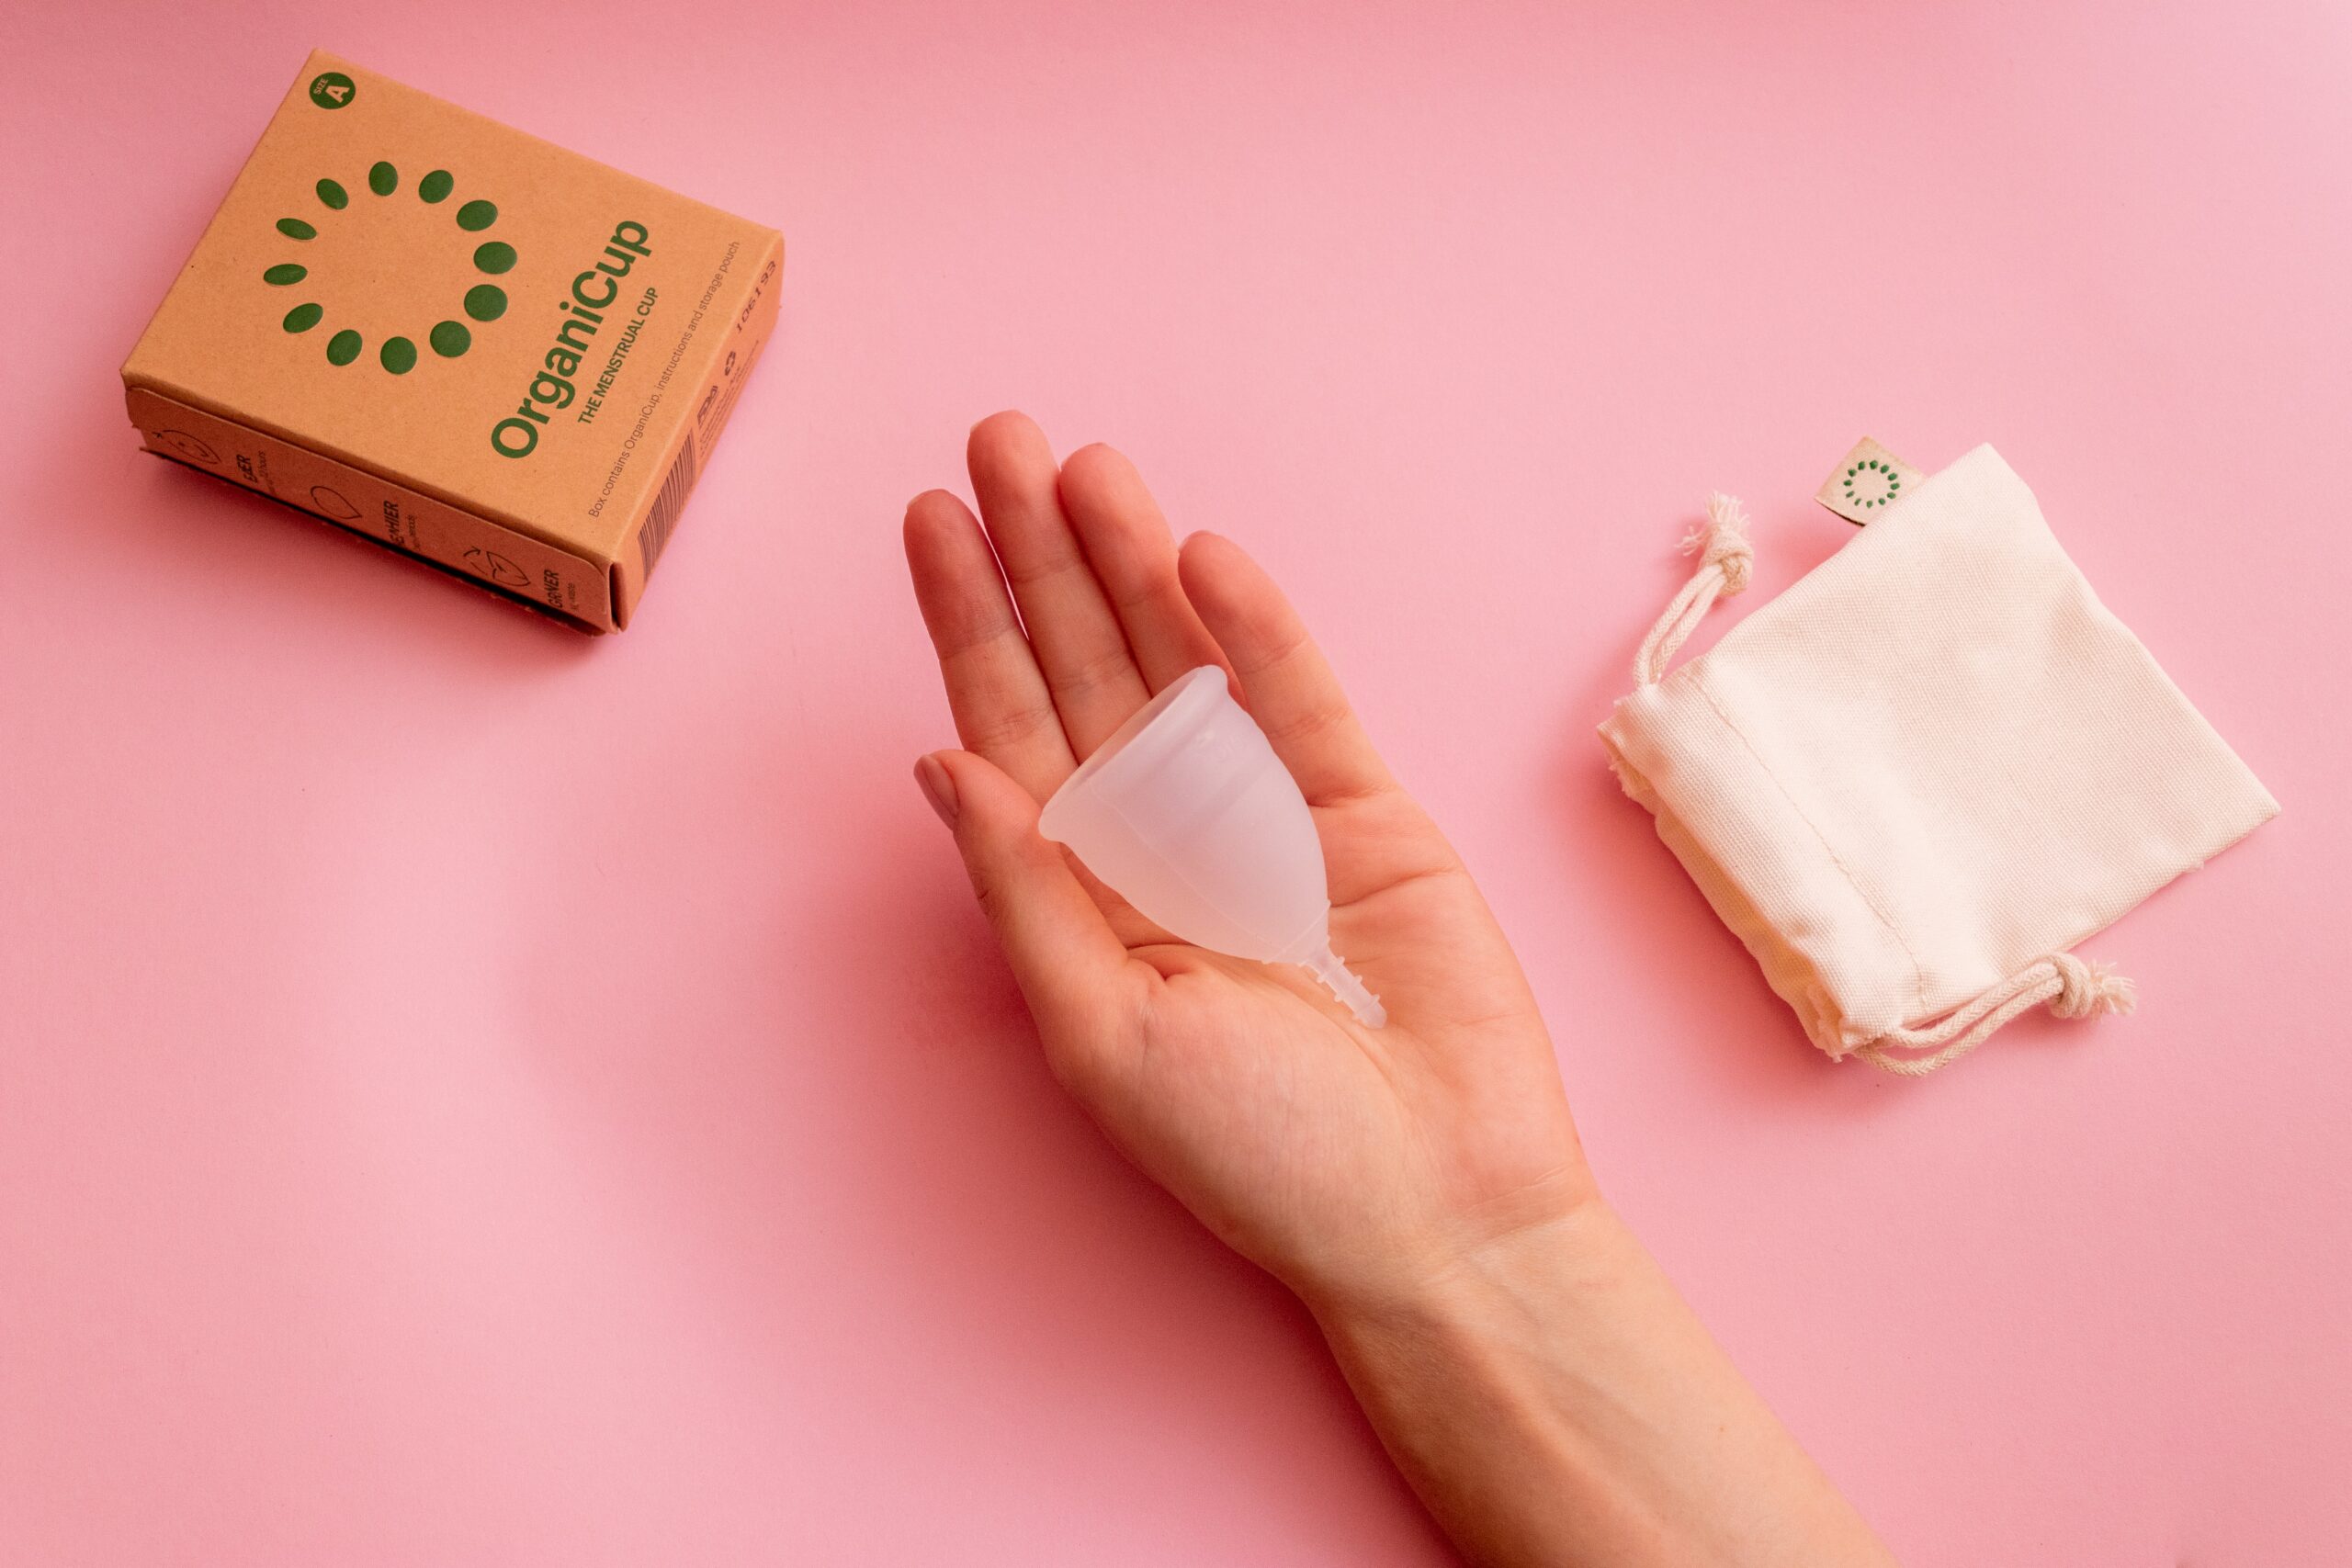 Une cup pour les menstruations des femmes avec son pochon et le packaging en matière recyclable